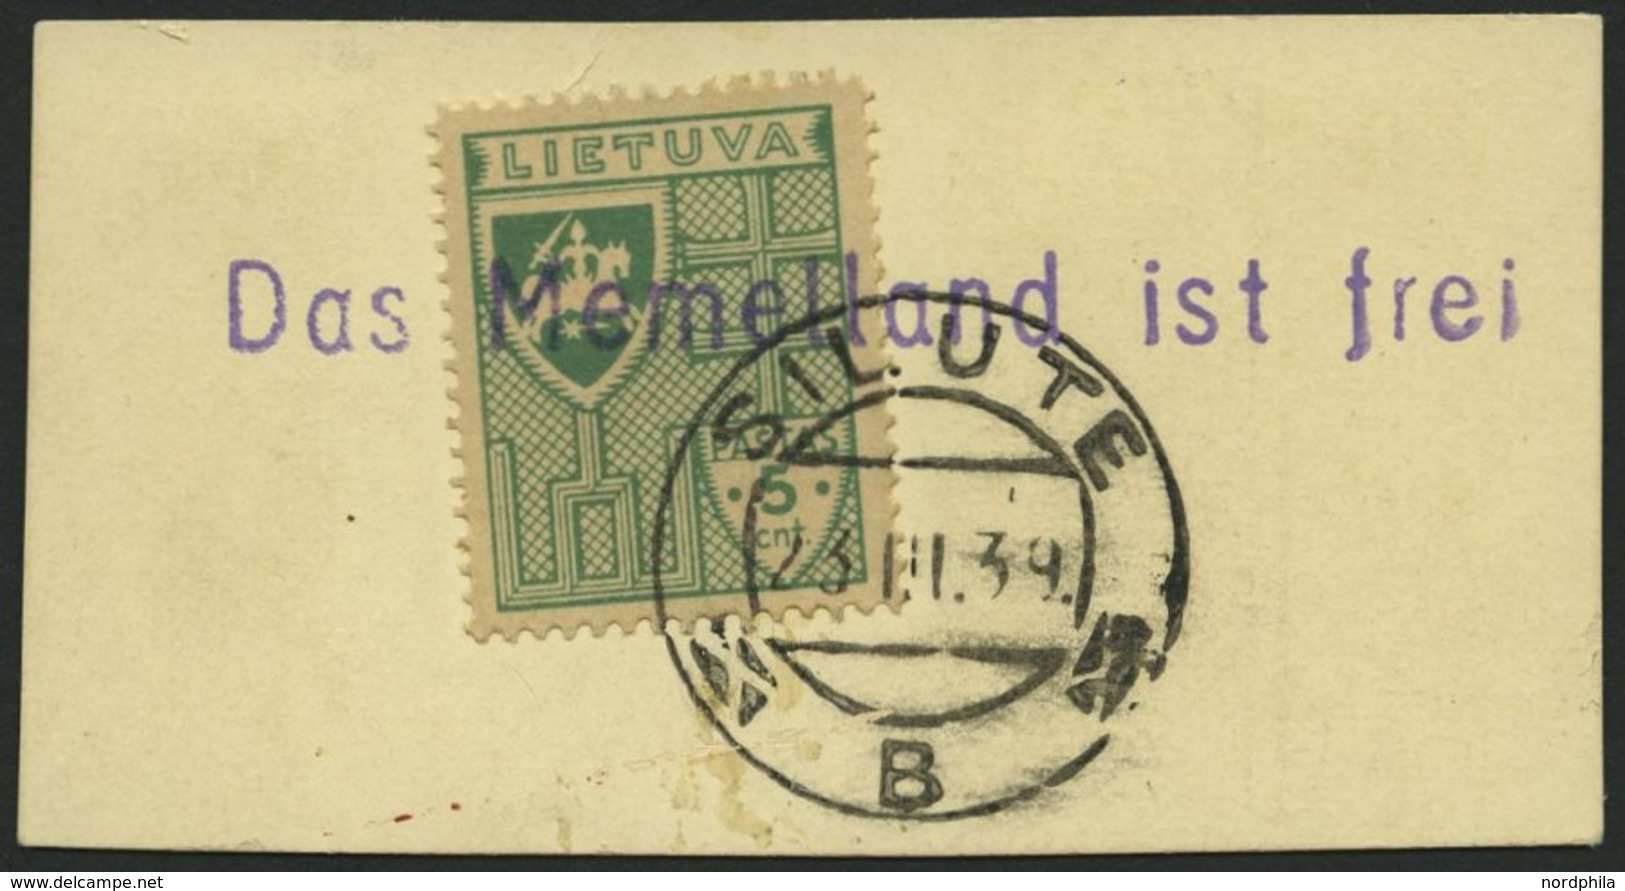 LITAUEN 409 BrfStk, 1939, 5 C. Grün Mit Stempel SILUTE Und Violettem L1 Das Memelland Ist Frei, Prachtbriefstück - Litouwen